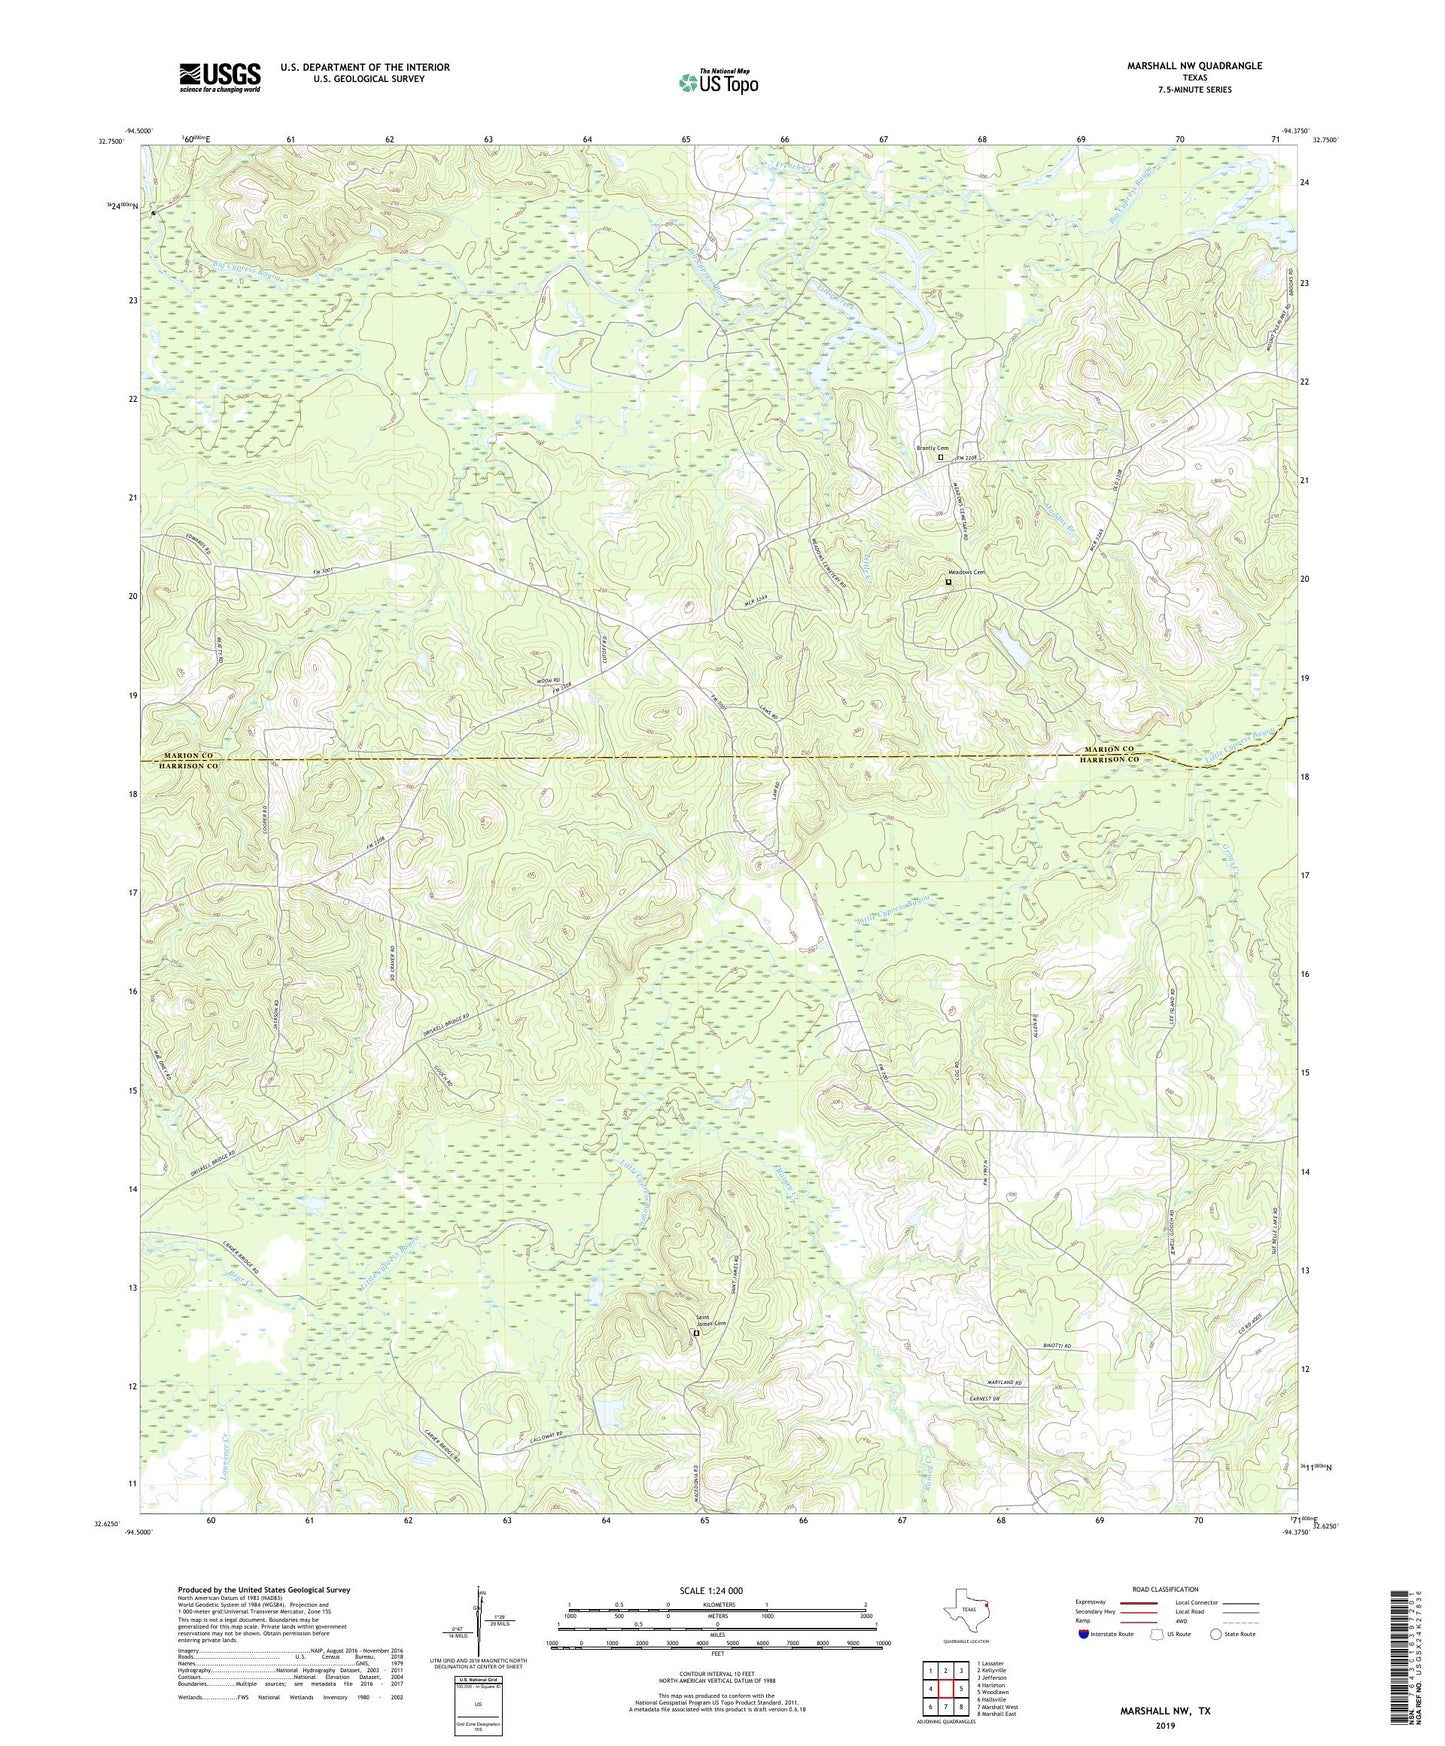 Marshall NW Texas US Topo Map Image